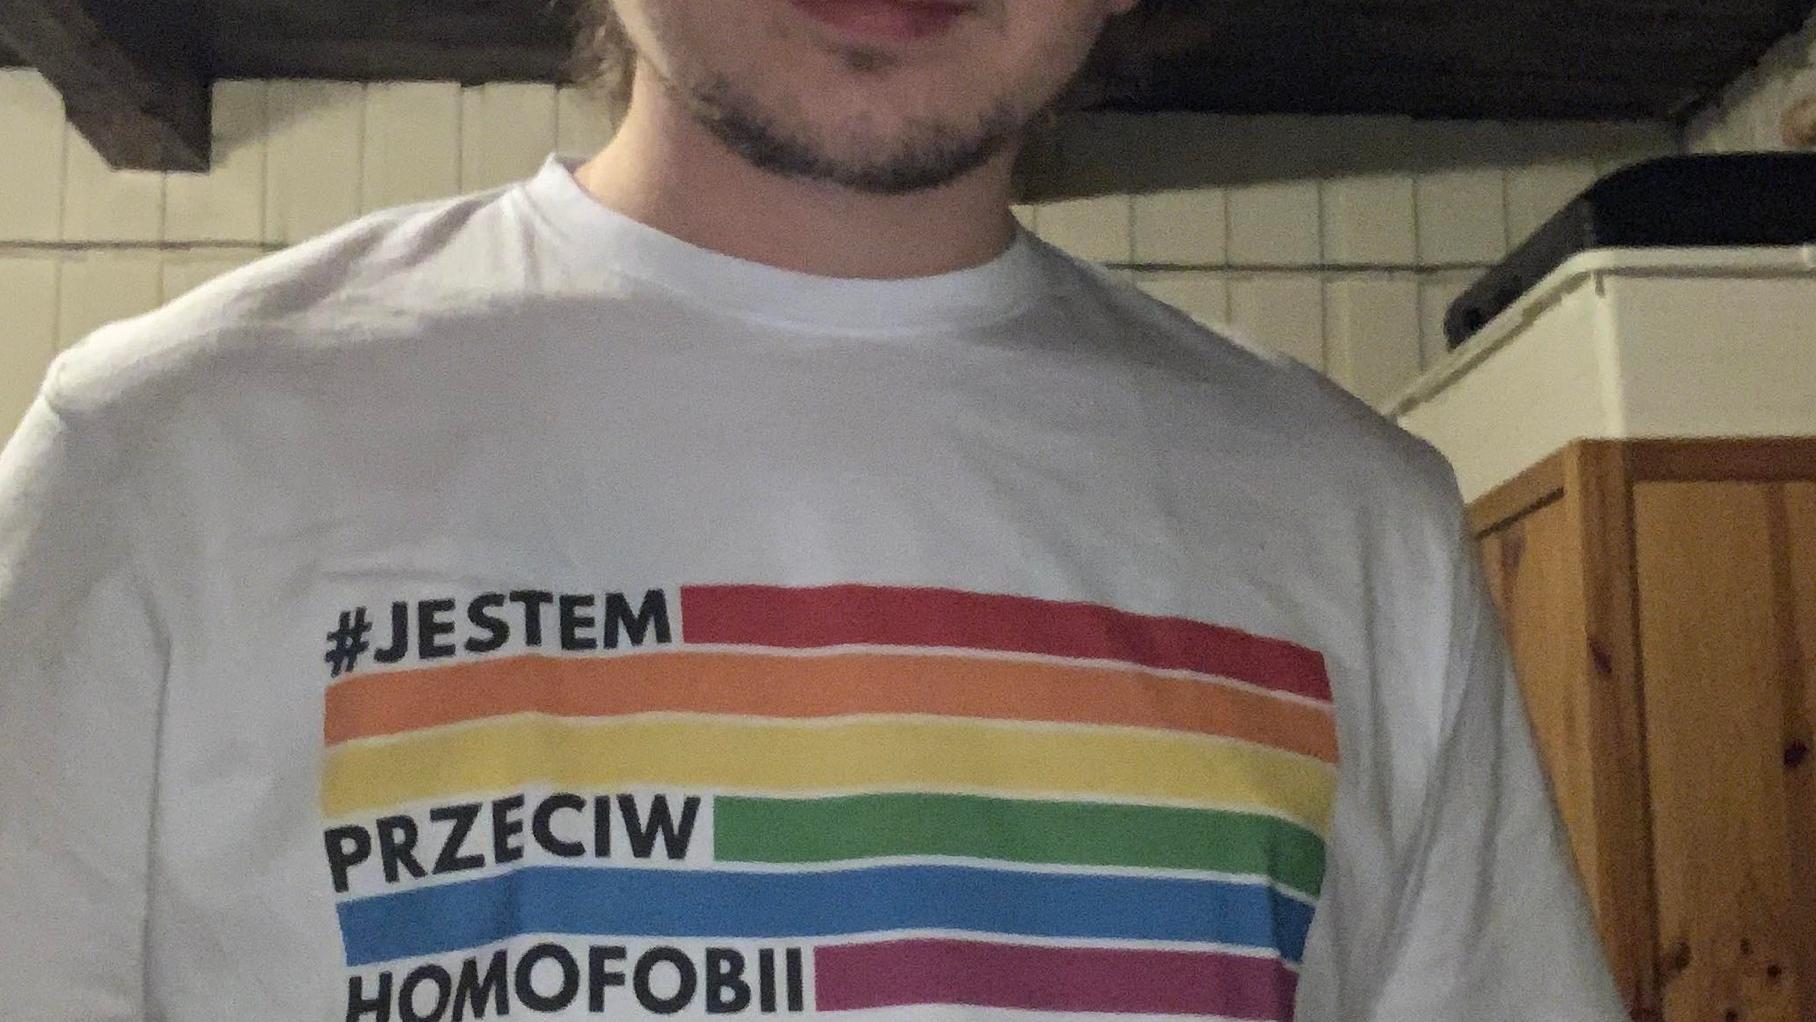 Młody męzczyzna w koszulce z motywem tęczy i napisem "Jestem przeciw homofobii"